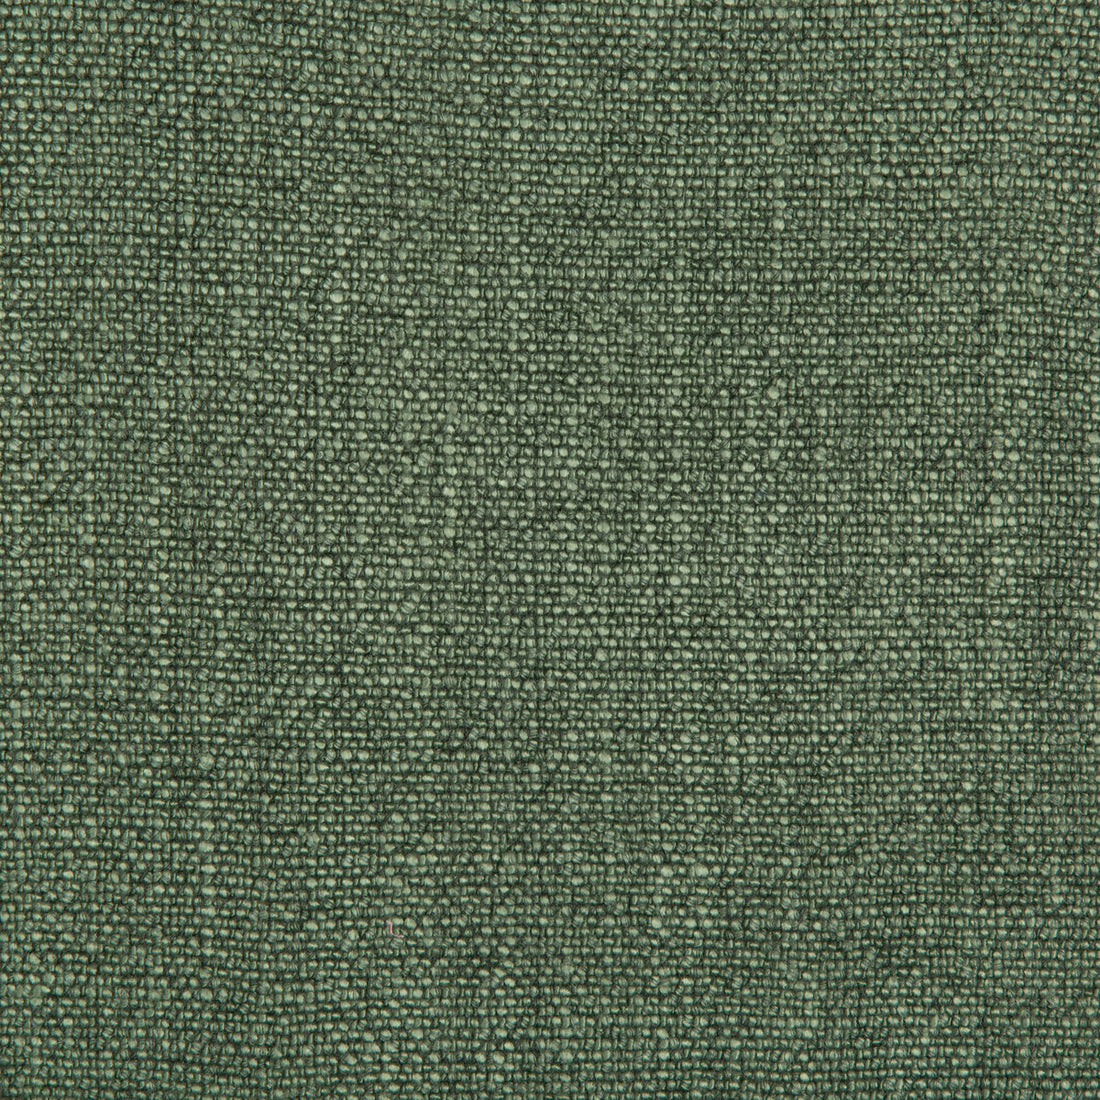 Kravet Basics fabric in 35189-3 color - pattern 35189.3.0 - by Kravet Basics